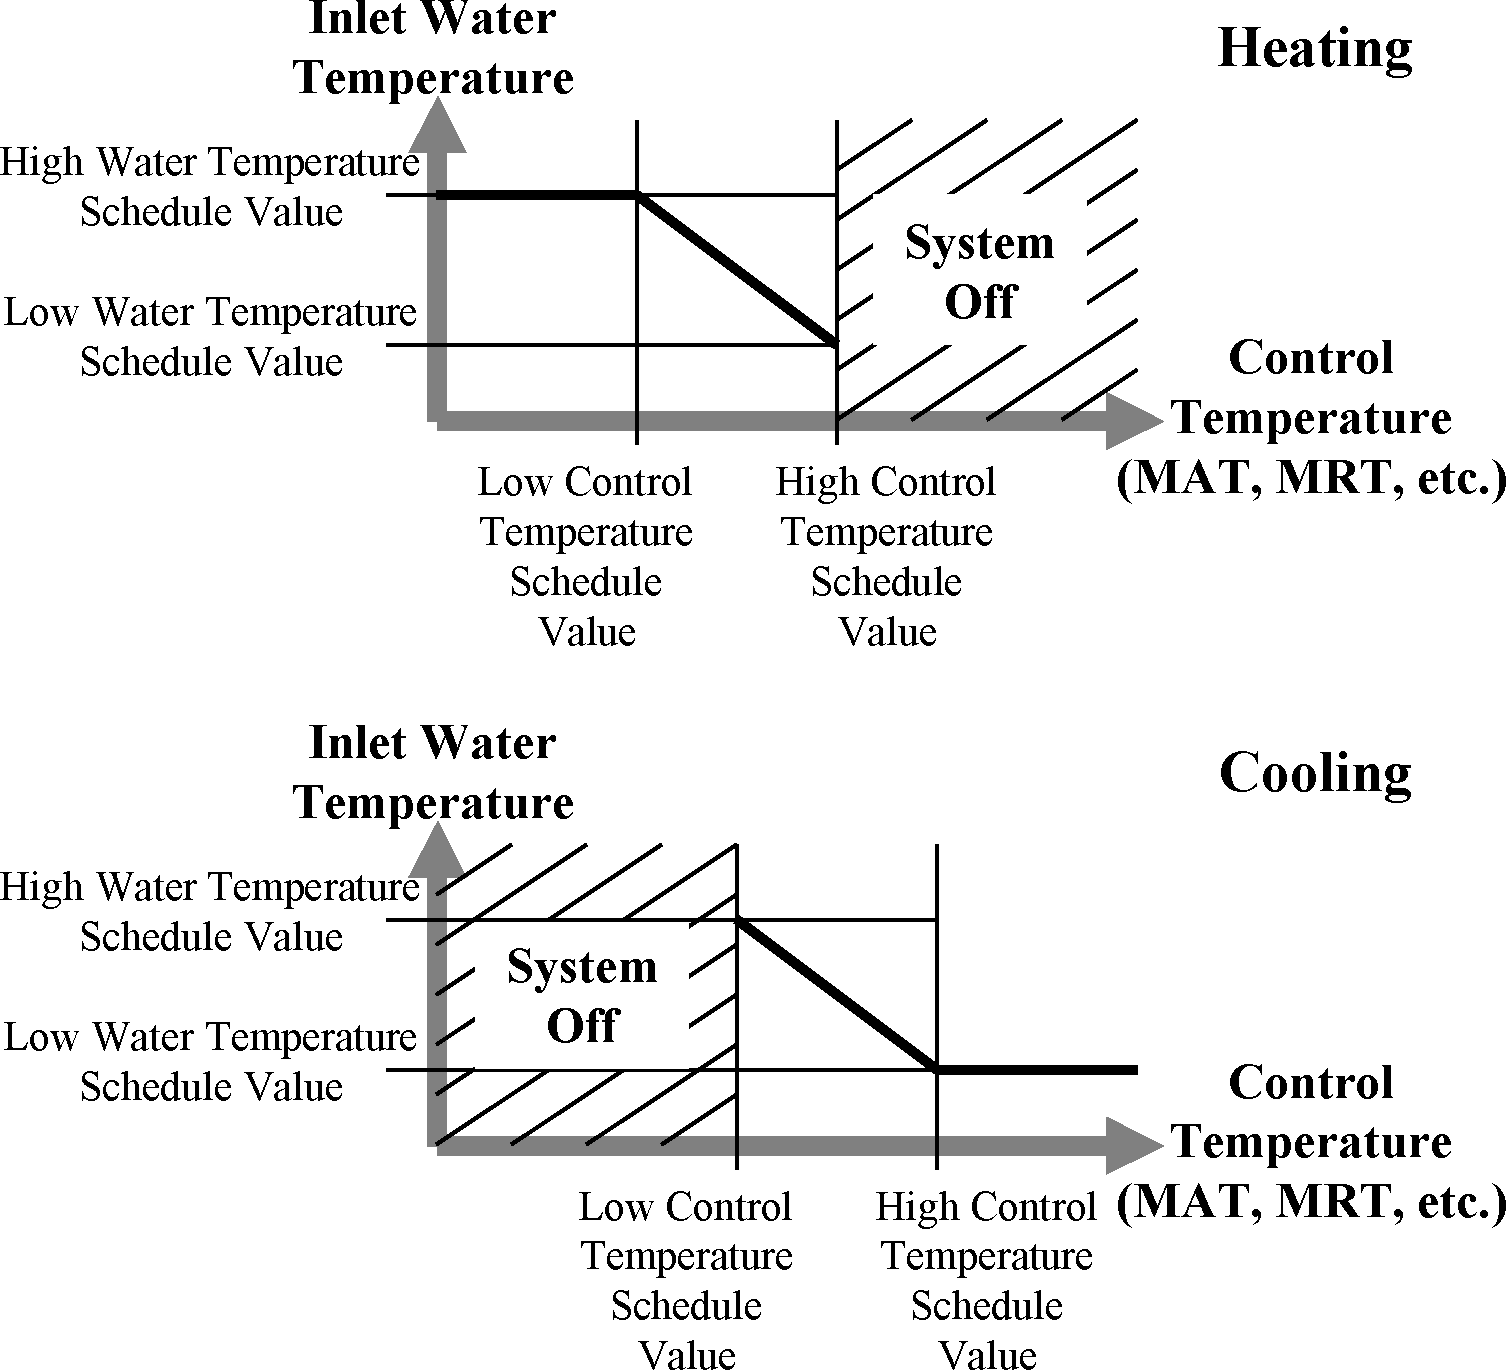 Variable Temperature Low Temperature Radiant System Controls [fig:variable-temperature-low-temperature-radiant]